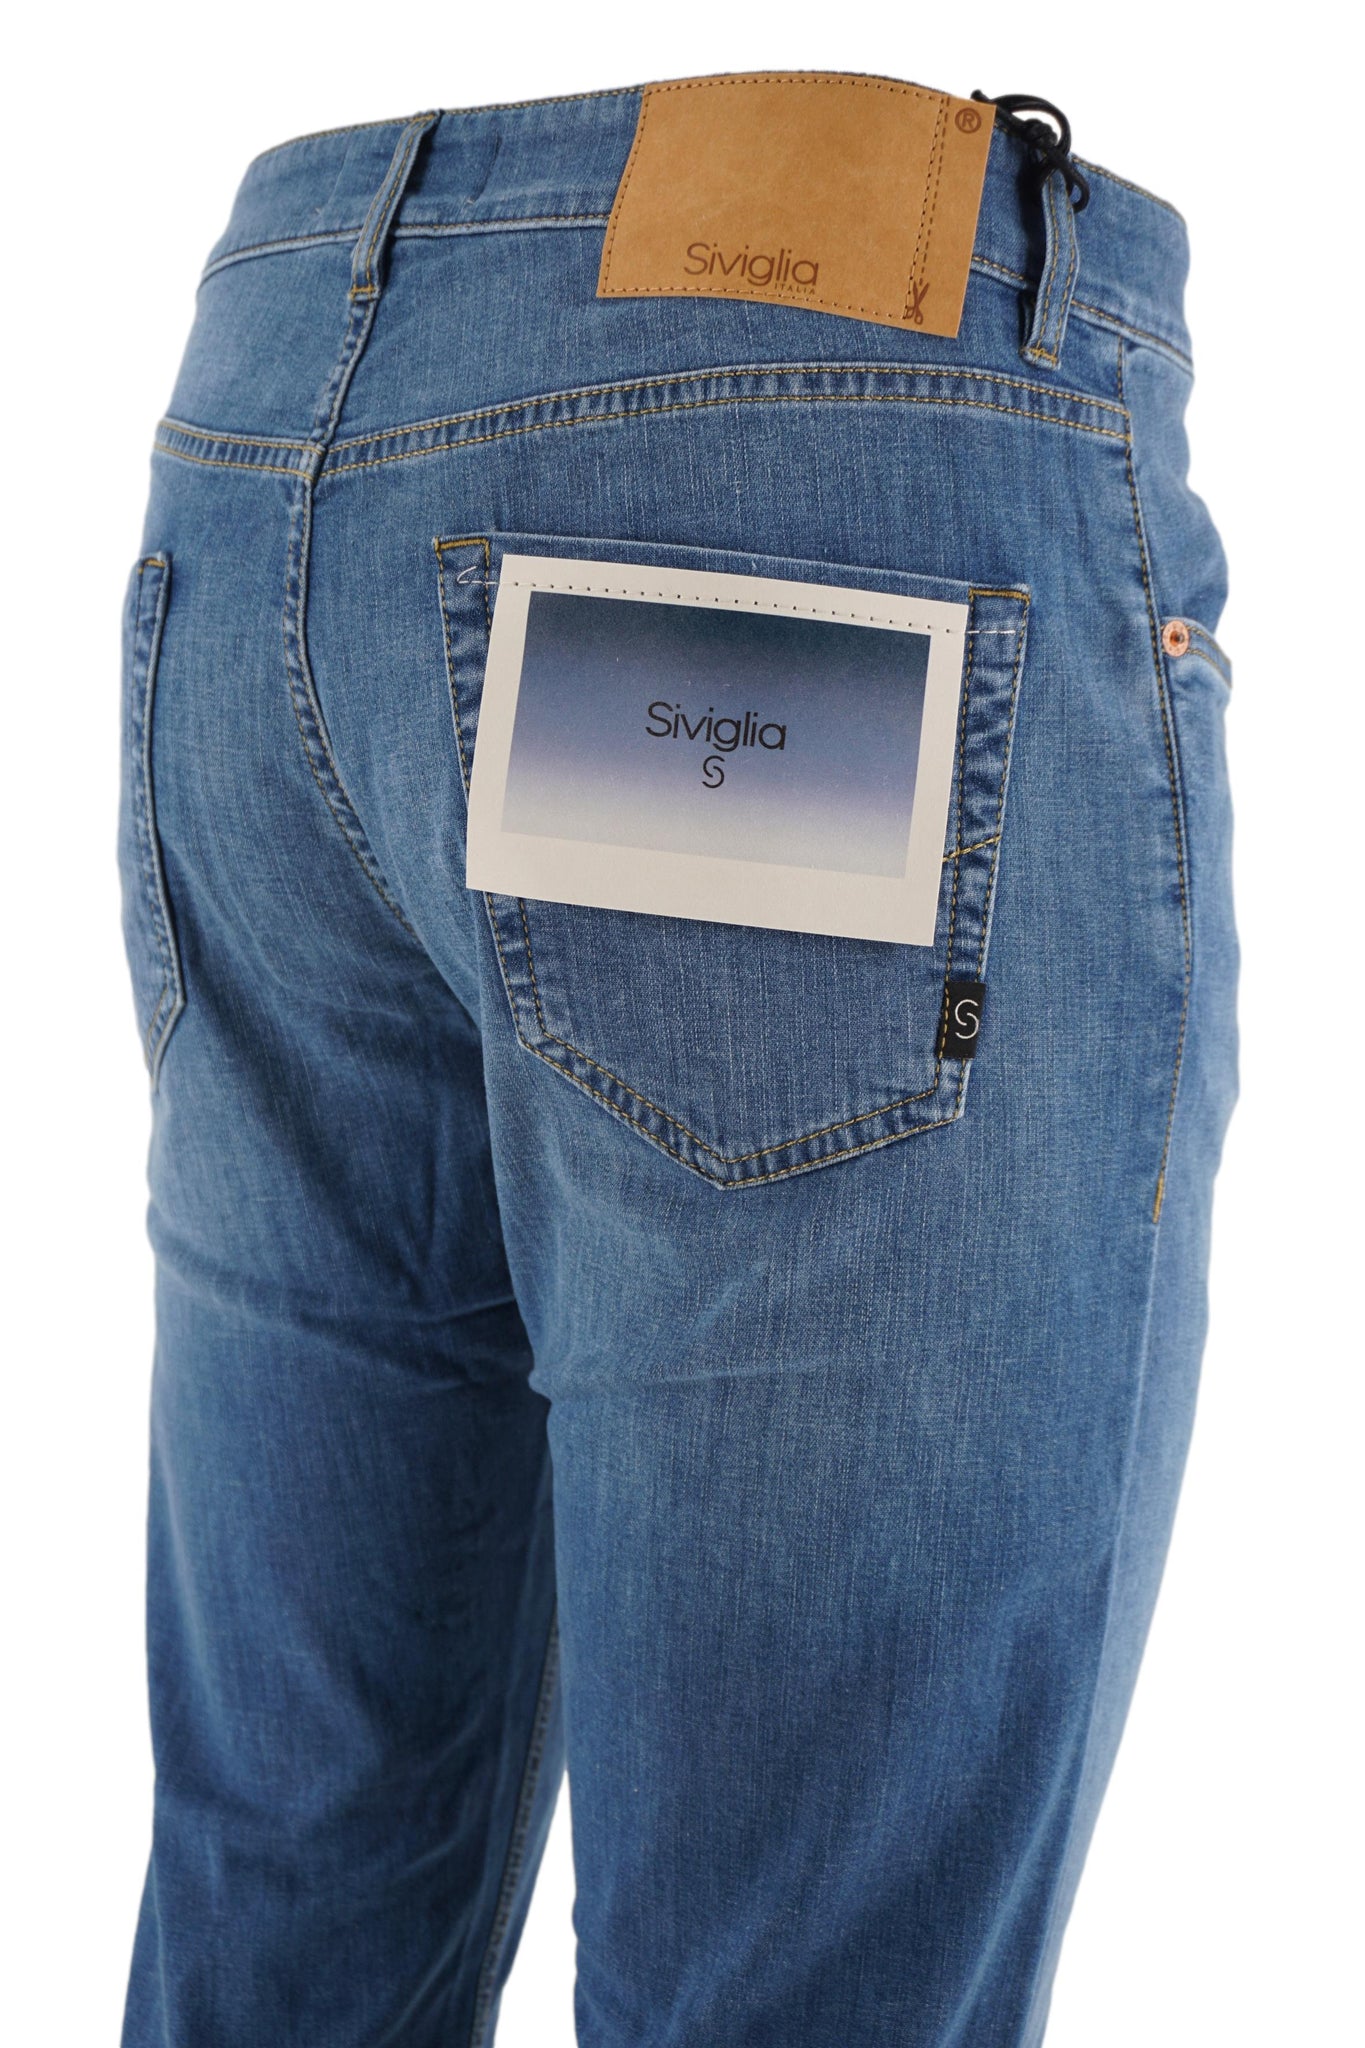 Jeans Ultraleggero Modello Palazzo / Jeans - Ideal Moda